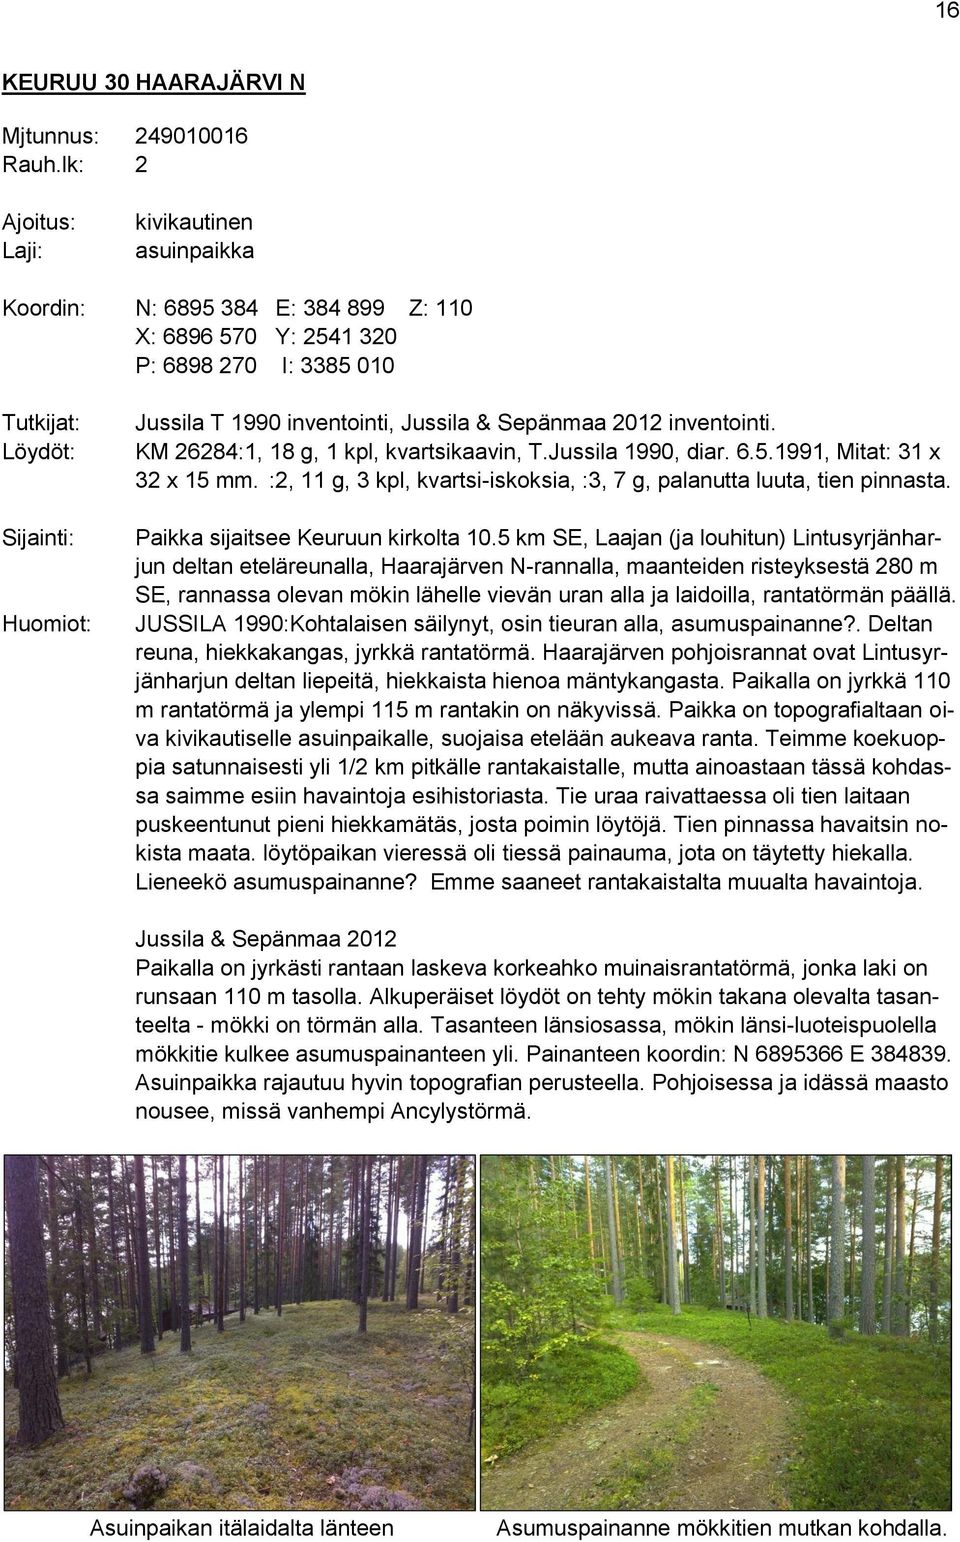 Jussila & Sepänmaa 2012 inventointi. KM 26284:1, 18 g, 1 kpl, kvartsikaavin, T.Jussila 1990, diar. 6.5.1991, Mitat: 31 x 32 x 15 mm.